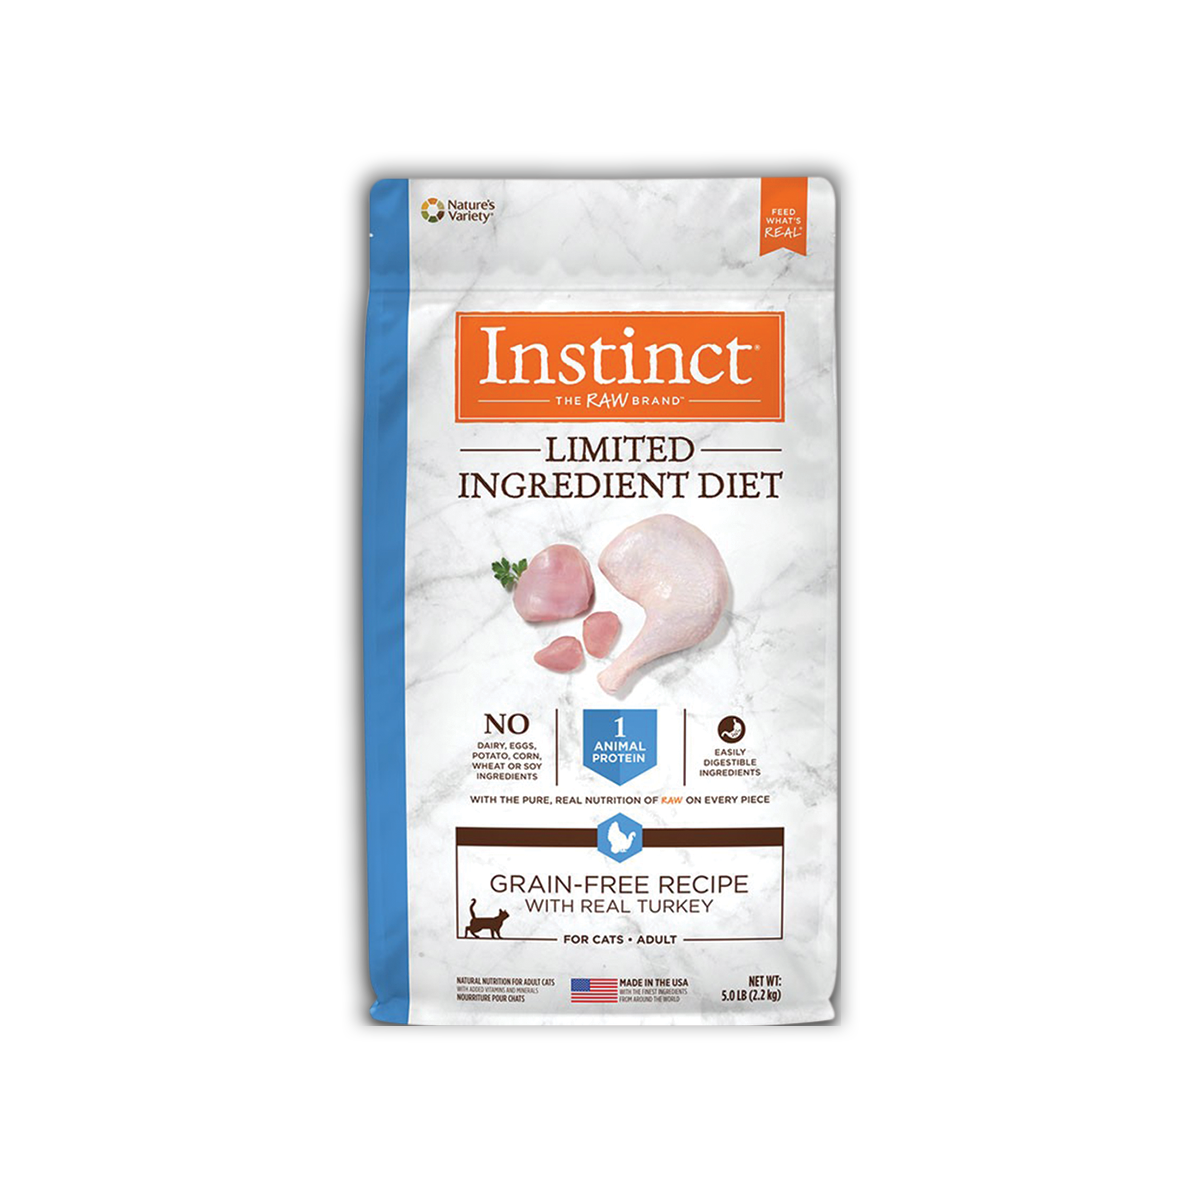 Instinct Limited Ingredient Diet Cat Turkey อินสติงต์ ลิมิเต็ด อินกรีเดียนท์ ไดเอท อาหารแมว สูตรเนื้อไก่งวง